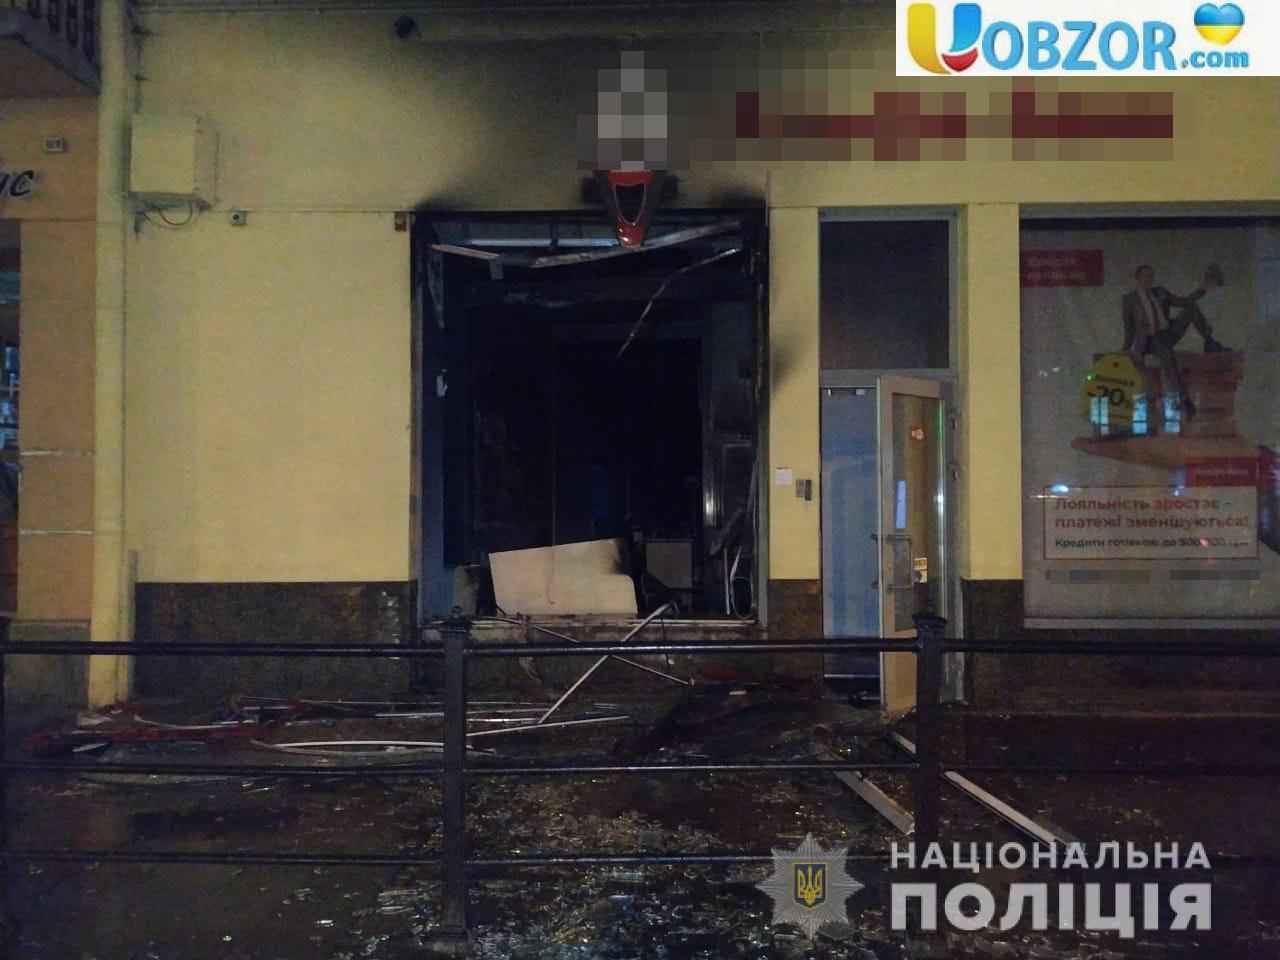 Підпалили відділення "Альфа-банк" у Львові: постраждалих немає